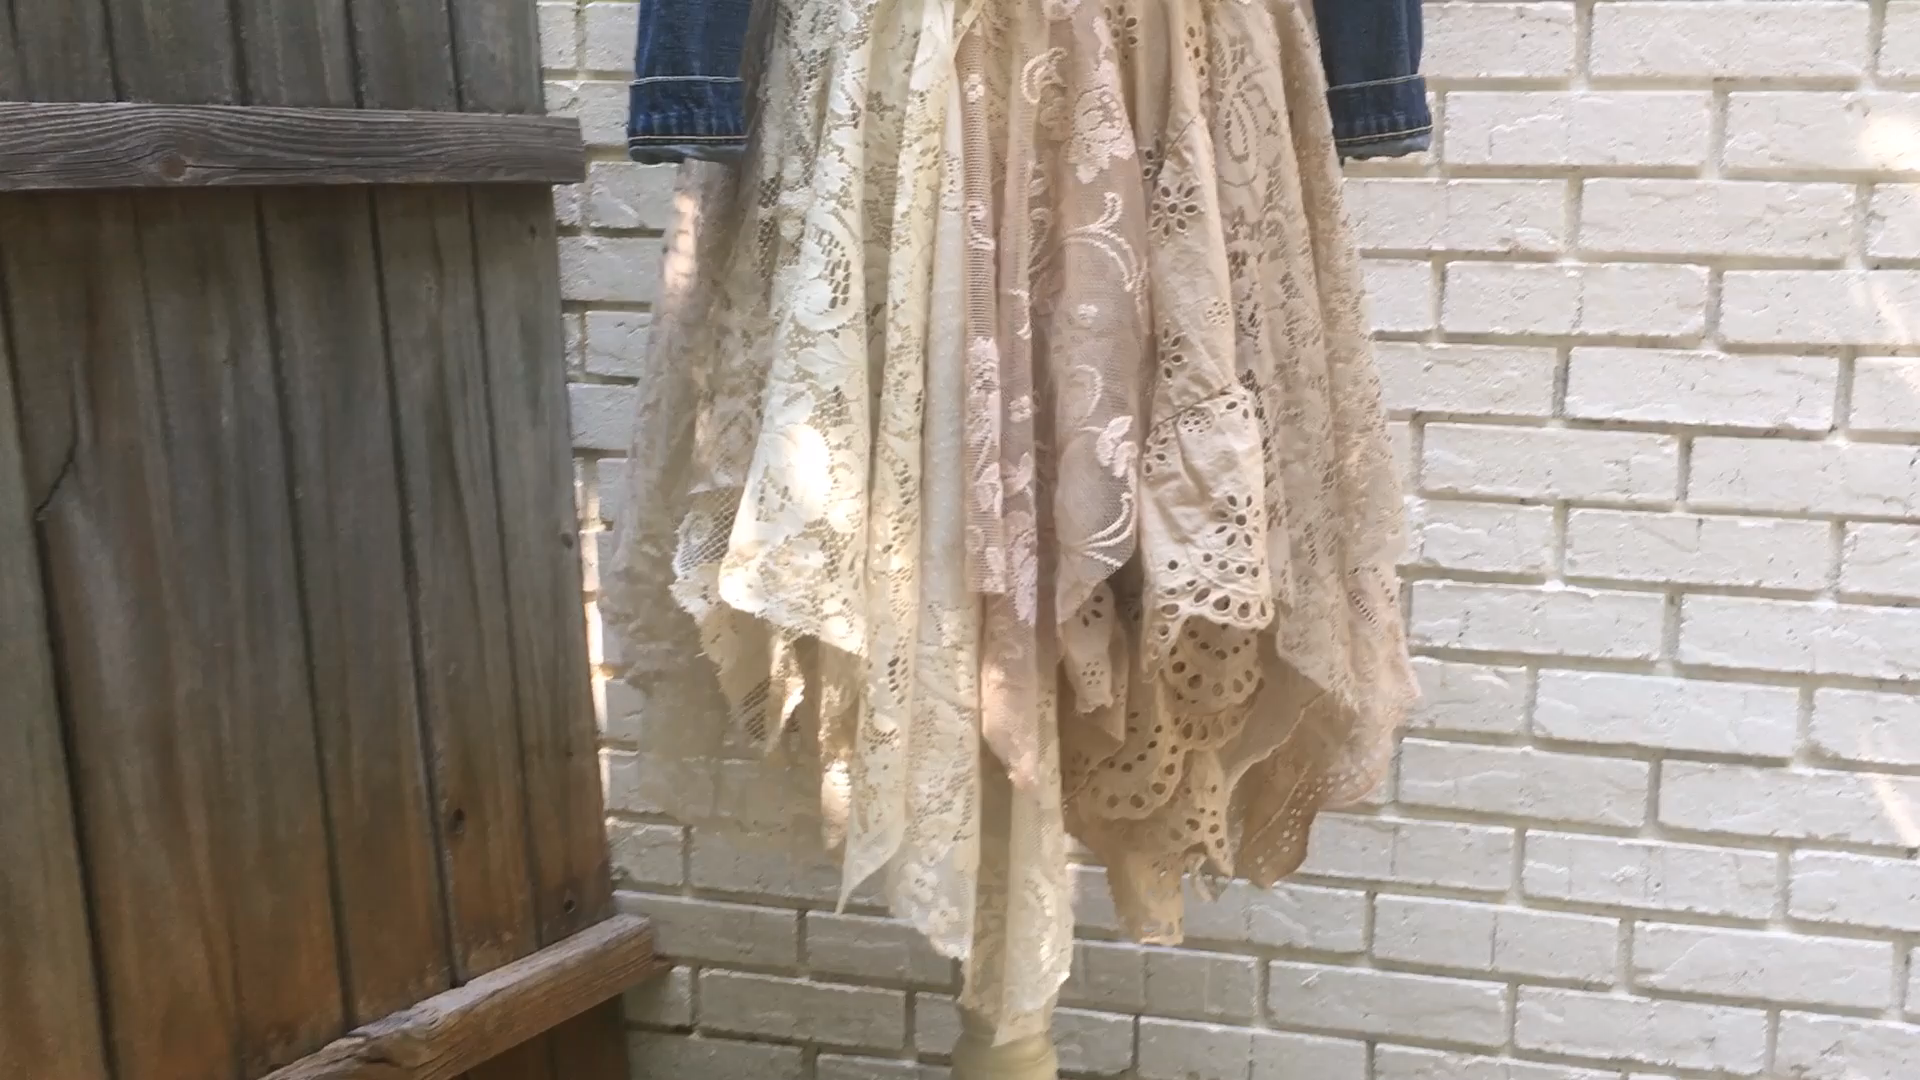 Layered Lace Skirt DIY - Layered Lace Skirt DIY -   19 diy Clothes boho ideas